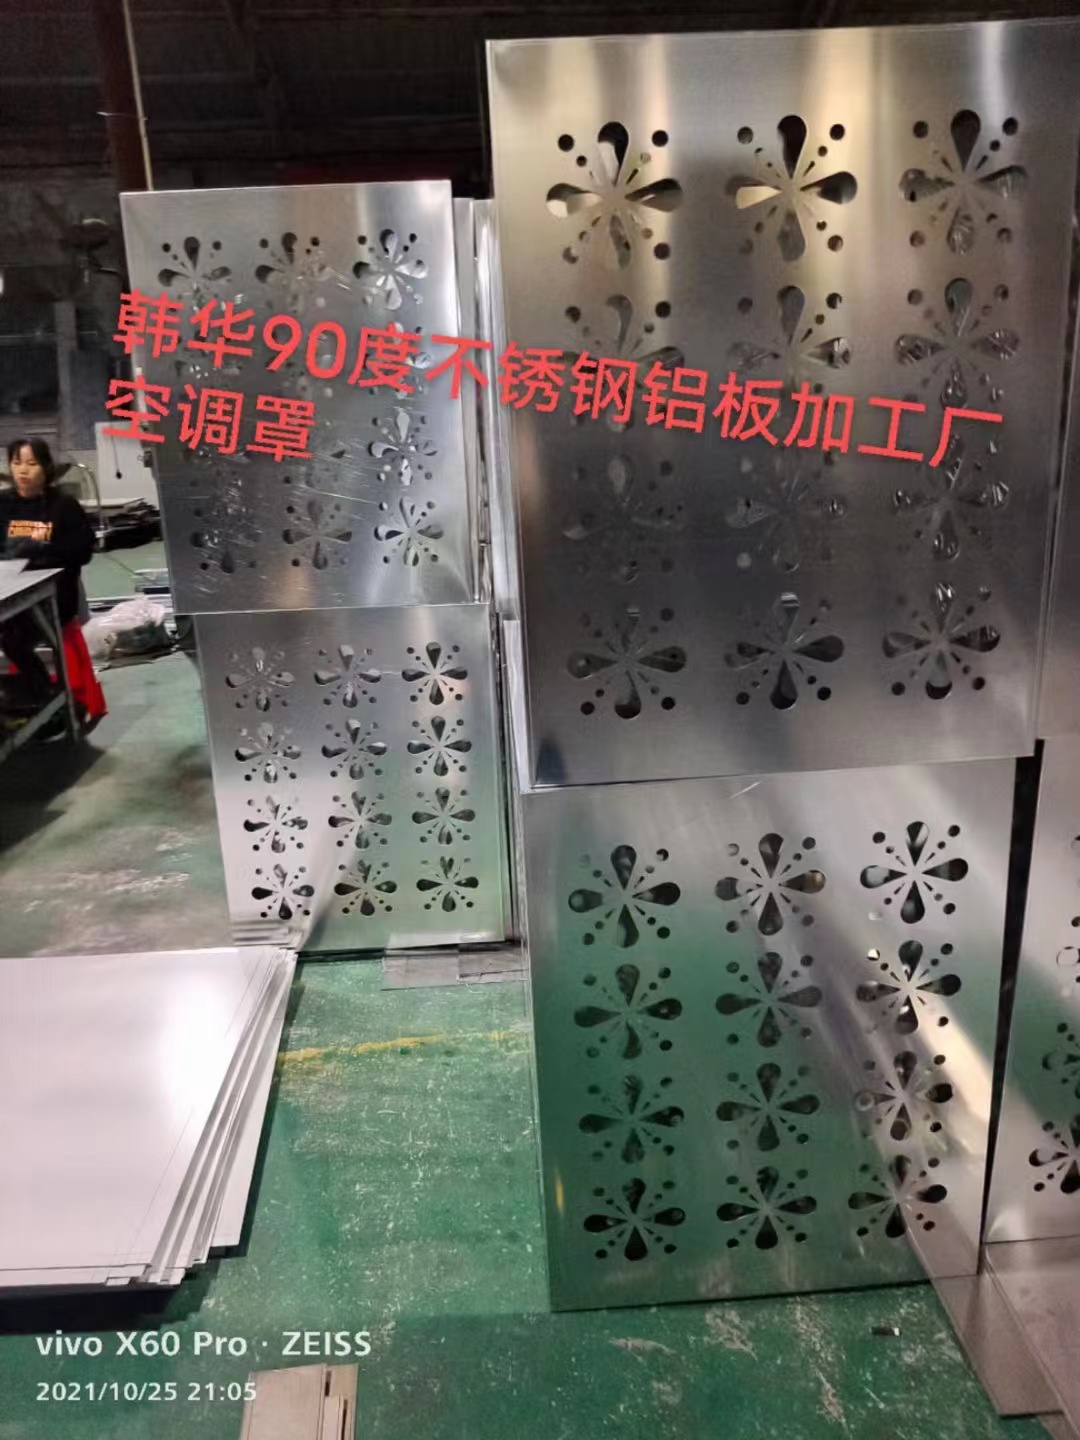 上海市幕墙铝单板厂家嘉定区 加工定制装饰幕墙铝单板厂商_镂空铝单板批发价格